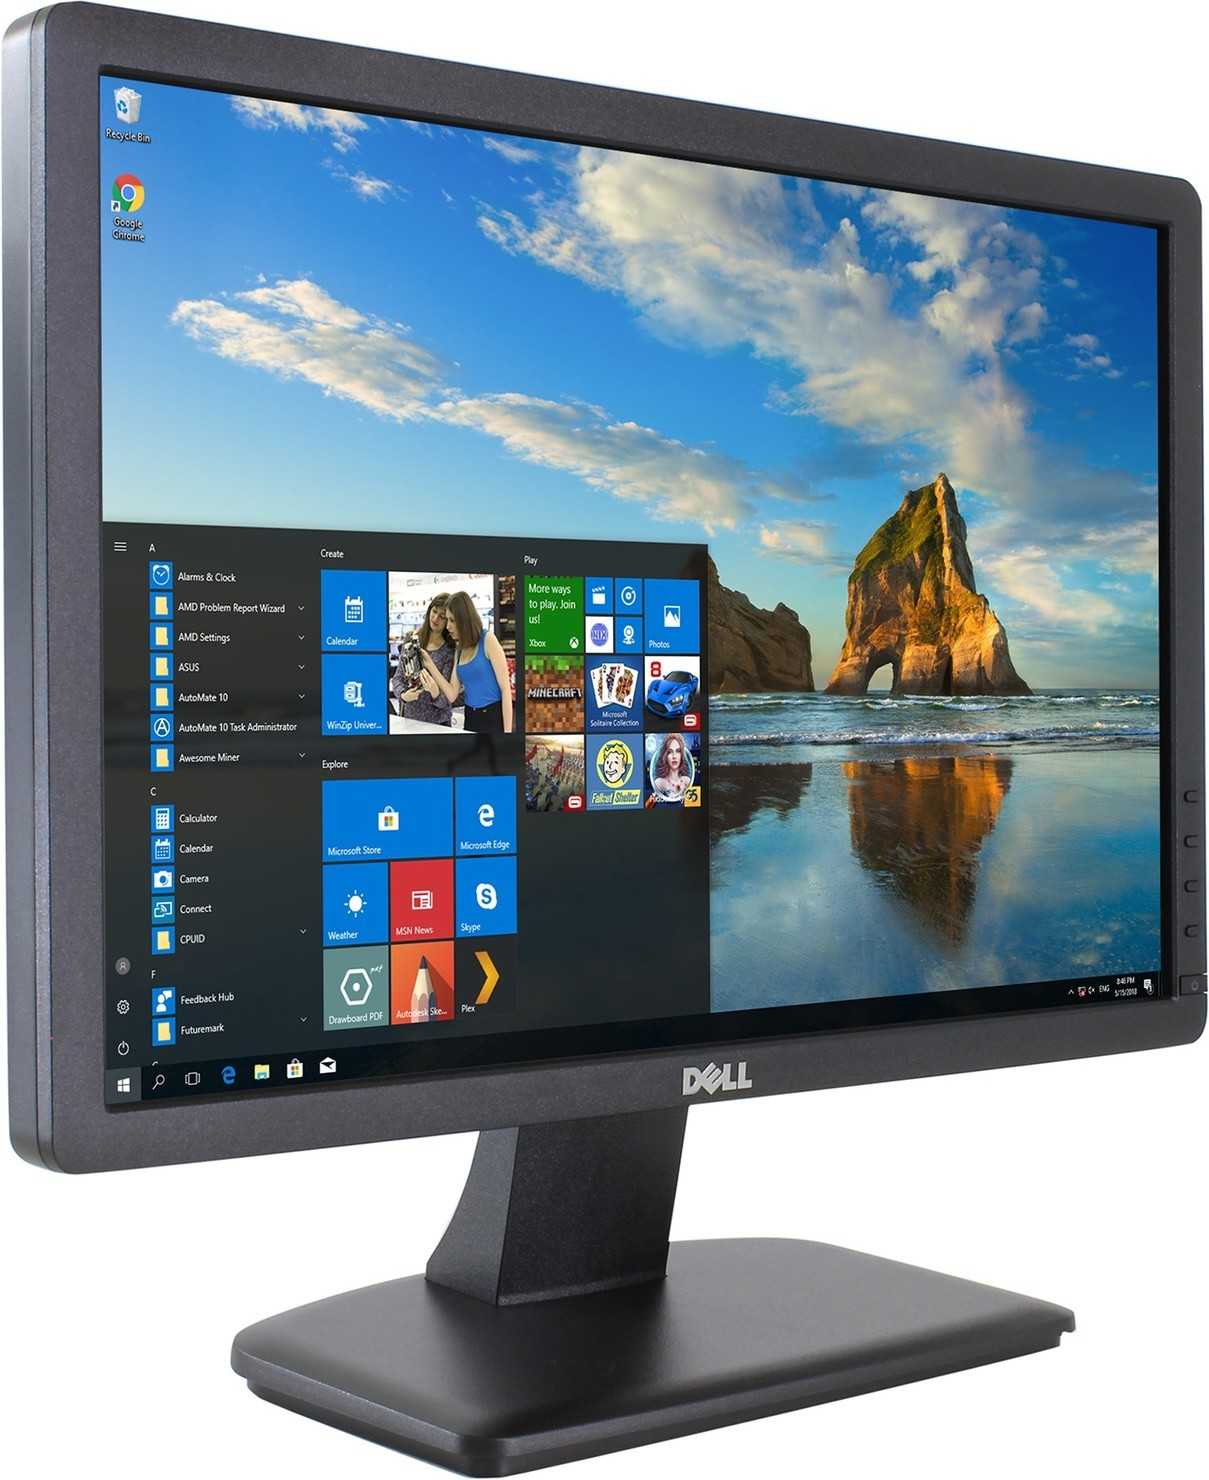 Монитор Dell E190S - подробные характеристики обзоры видео фото Цены в интернет-магазинах где можно купить монитор Dell E190S